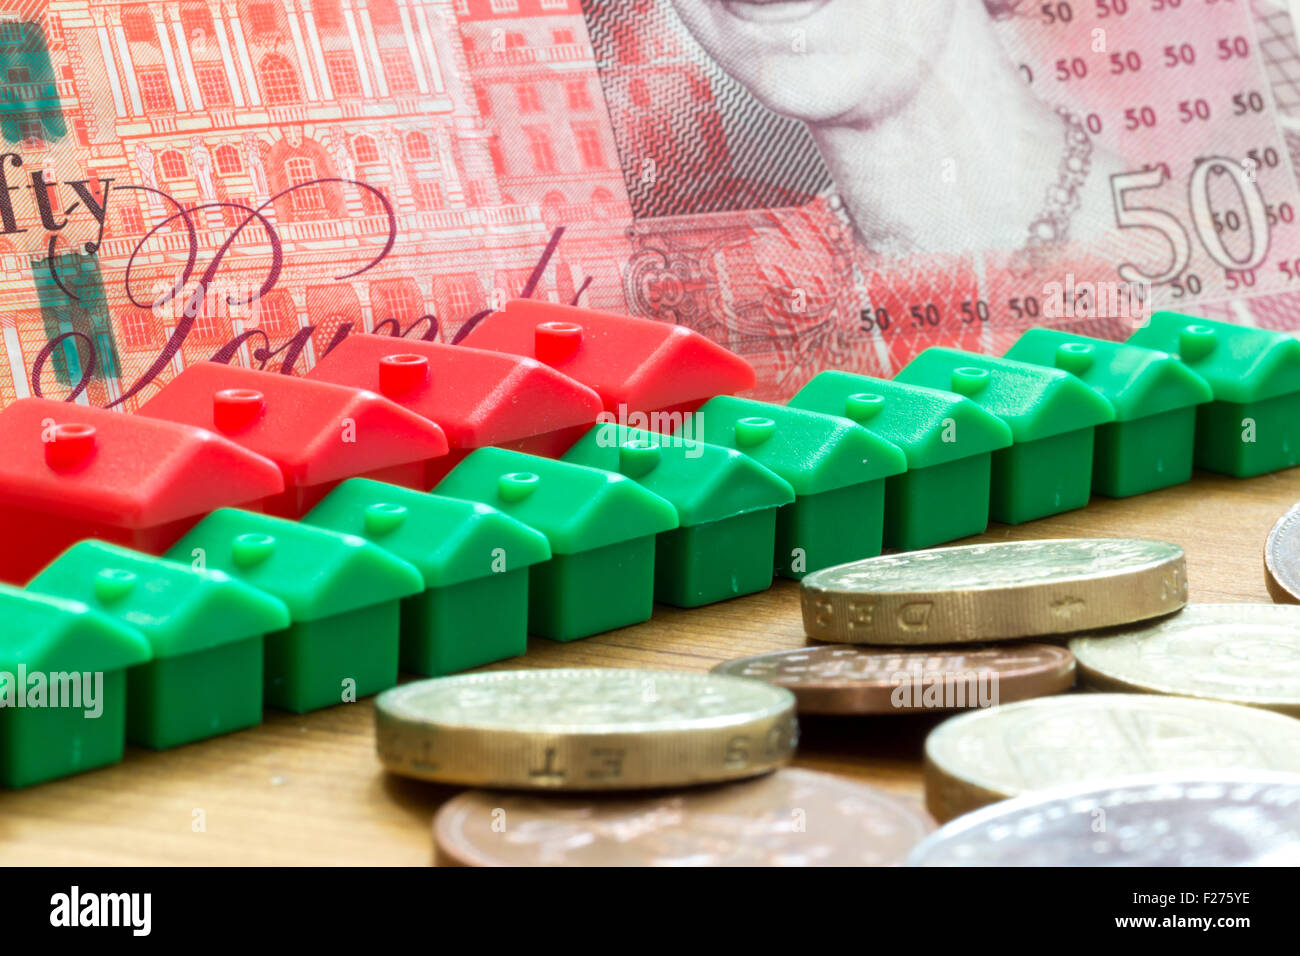 Verde y rojo imitación de plástico modelo casas forman una fila diagonal dinámica con un solo cincuenta libras británicas Bank note en la espalda Foto de stock